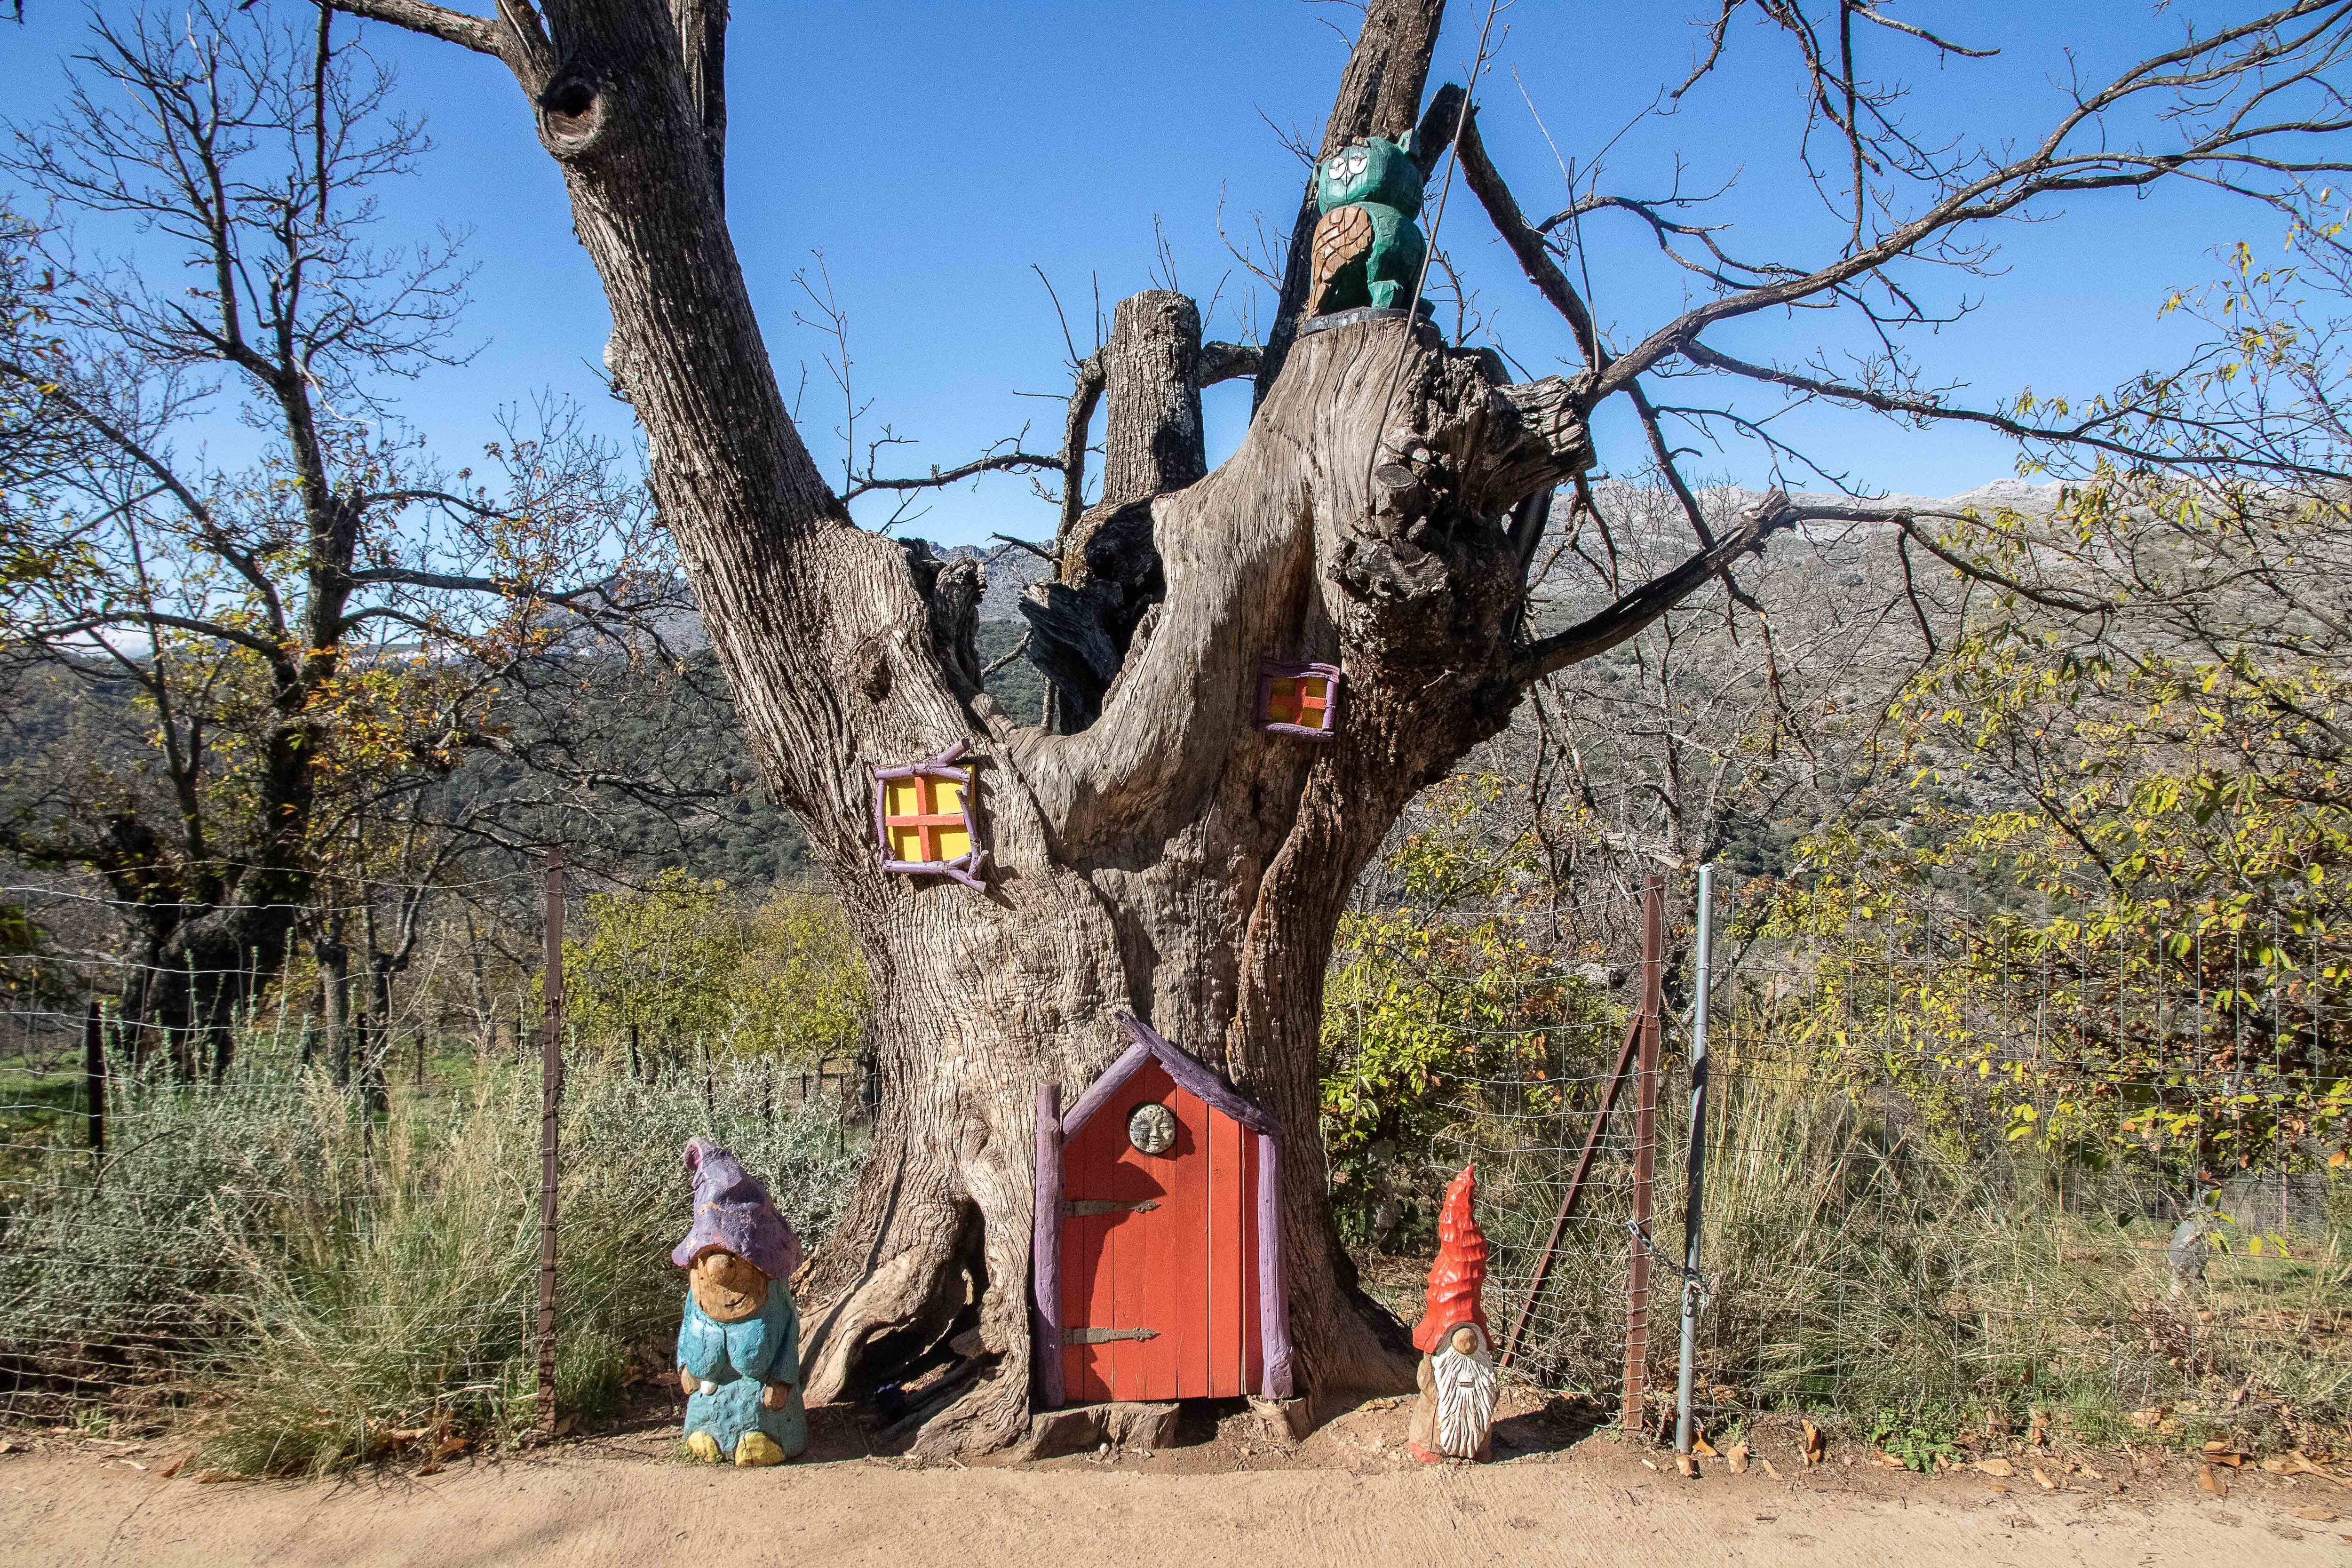 Una de las obras que integran el Bosque Encantado de Parauta, un recorrido de poco más de un kilómetro que acumula un puñado de esculturas de hadas, magos y duendes.